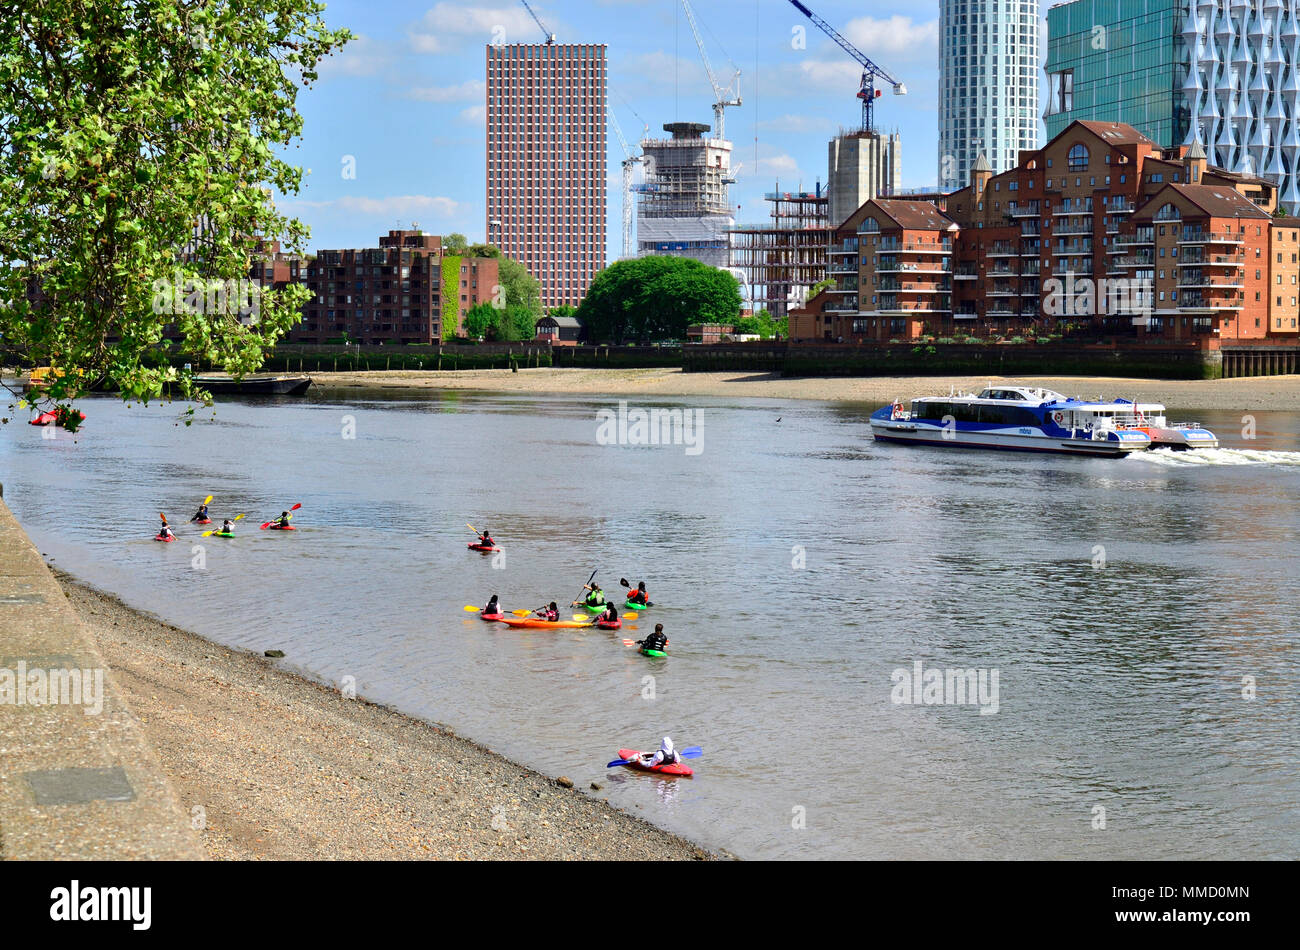 Londres, Angleterre, Royaume-Uni. Enfants canoë sur la Tamise, en face de Battersea Power Station Banque D'Images